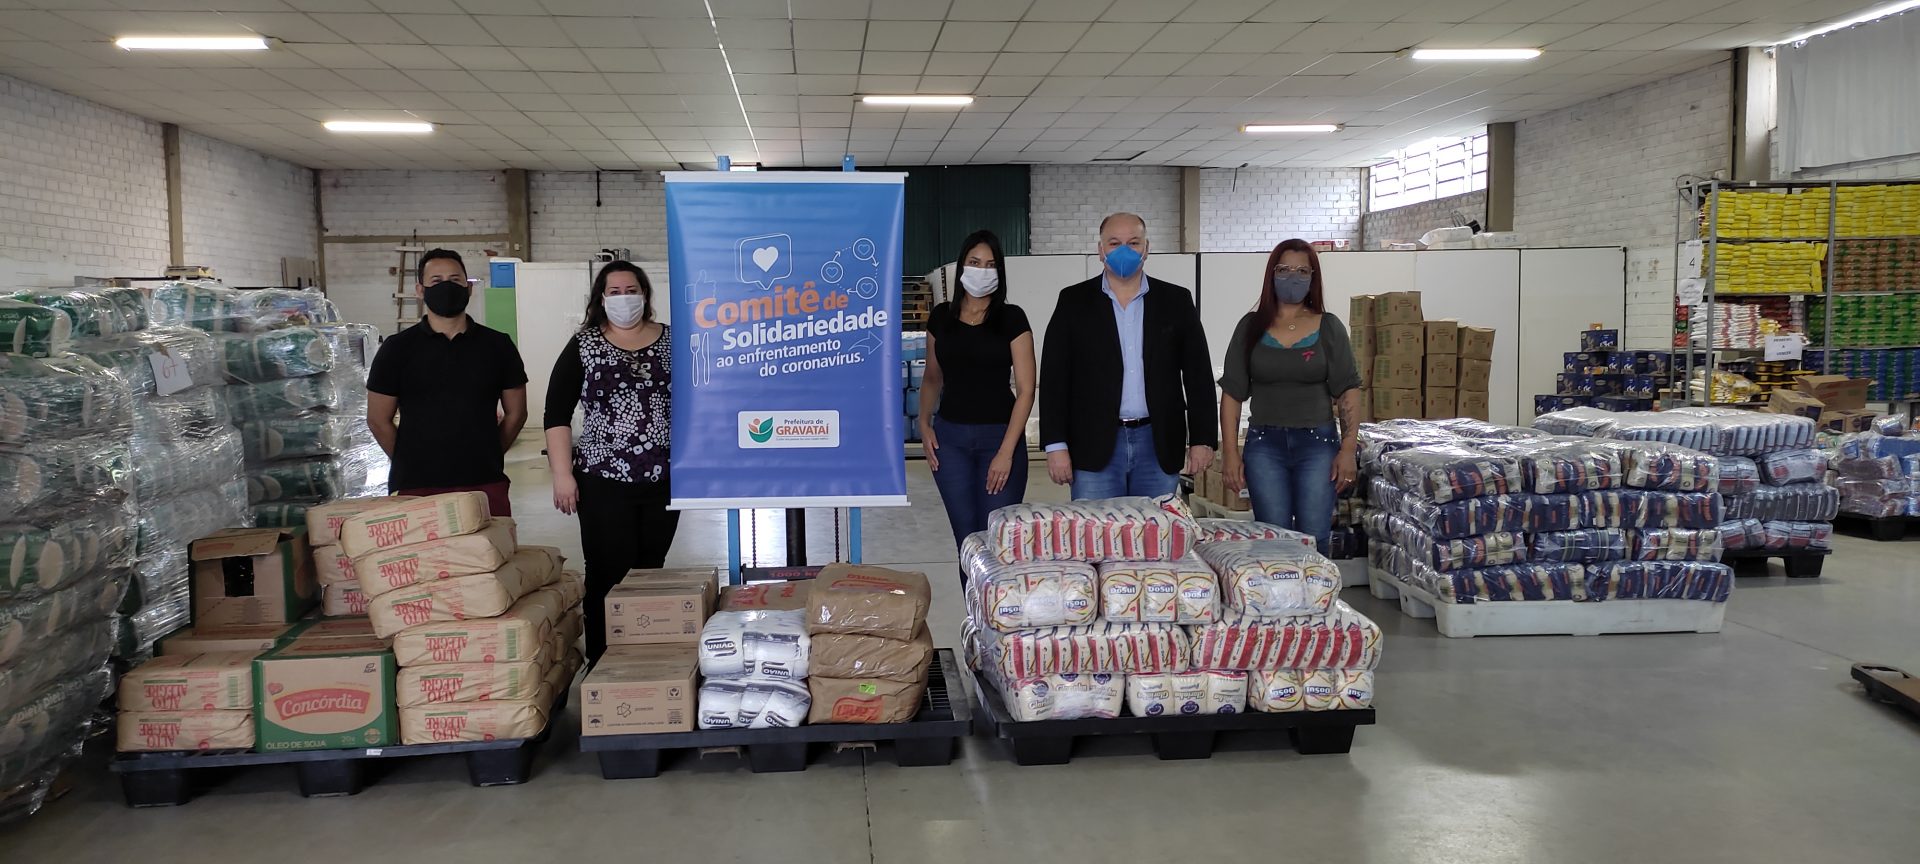 Vice-prefeito de Gravataí, Dr. Levi, doa uma tonelada de alimentos ao Comitê de Solidariedade